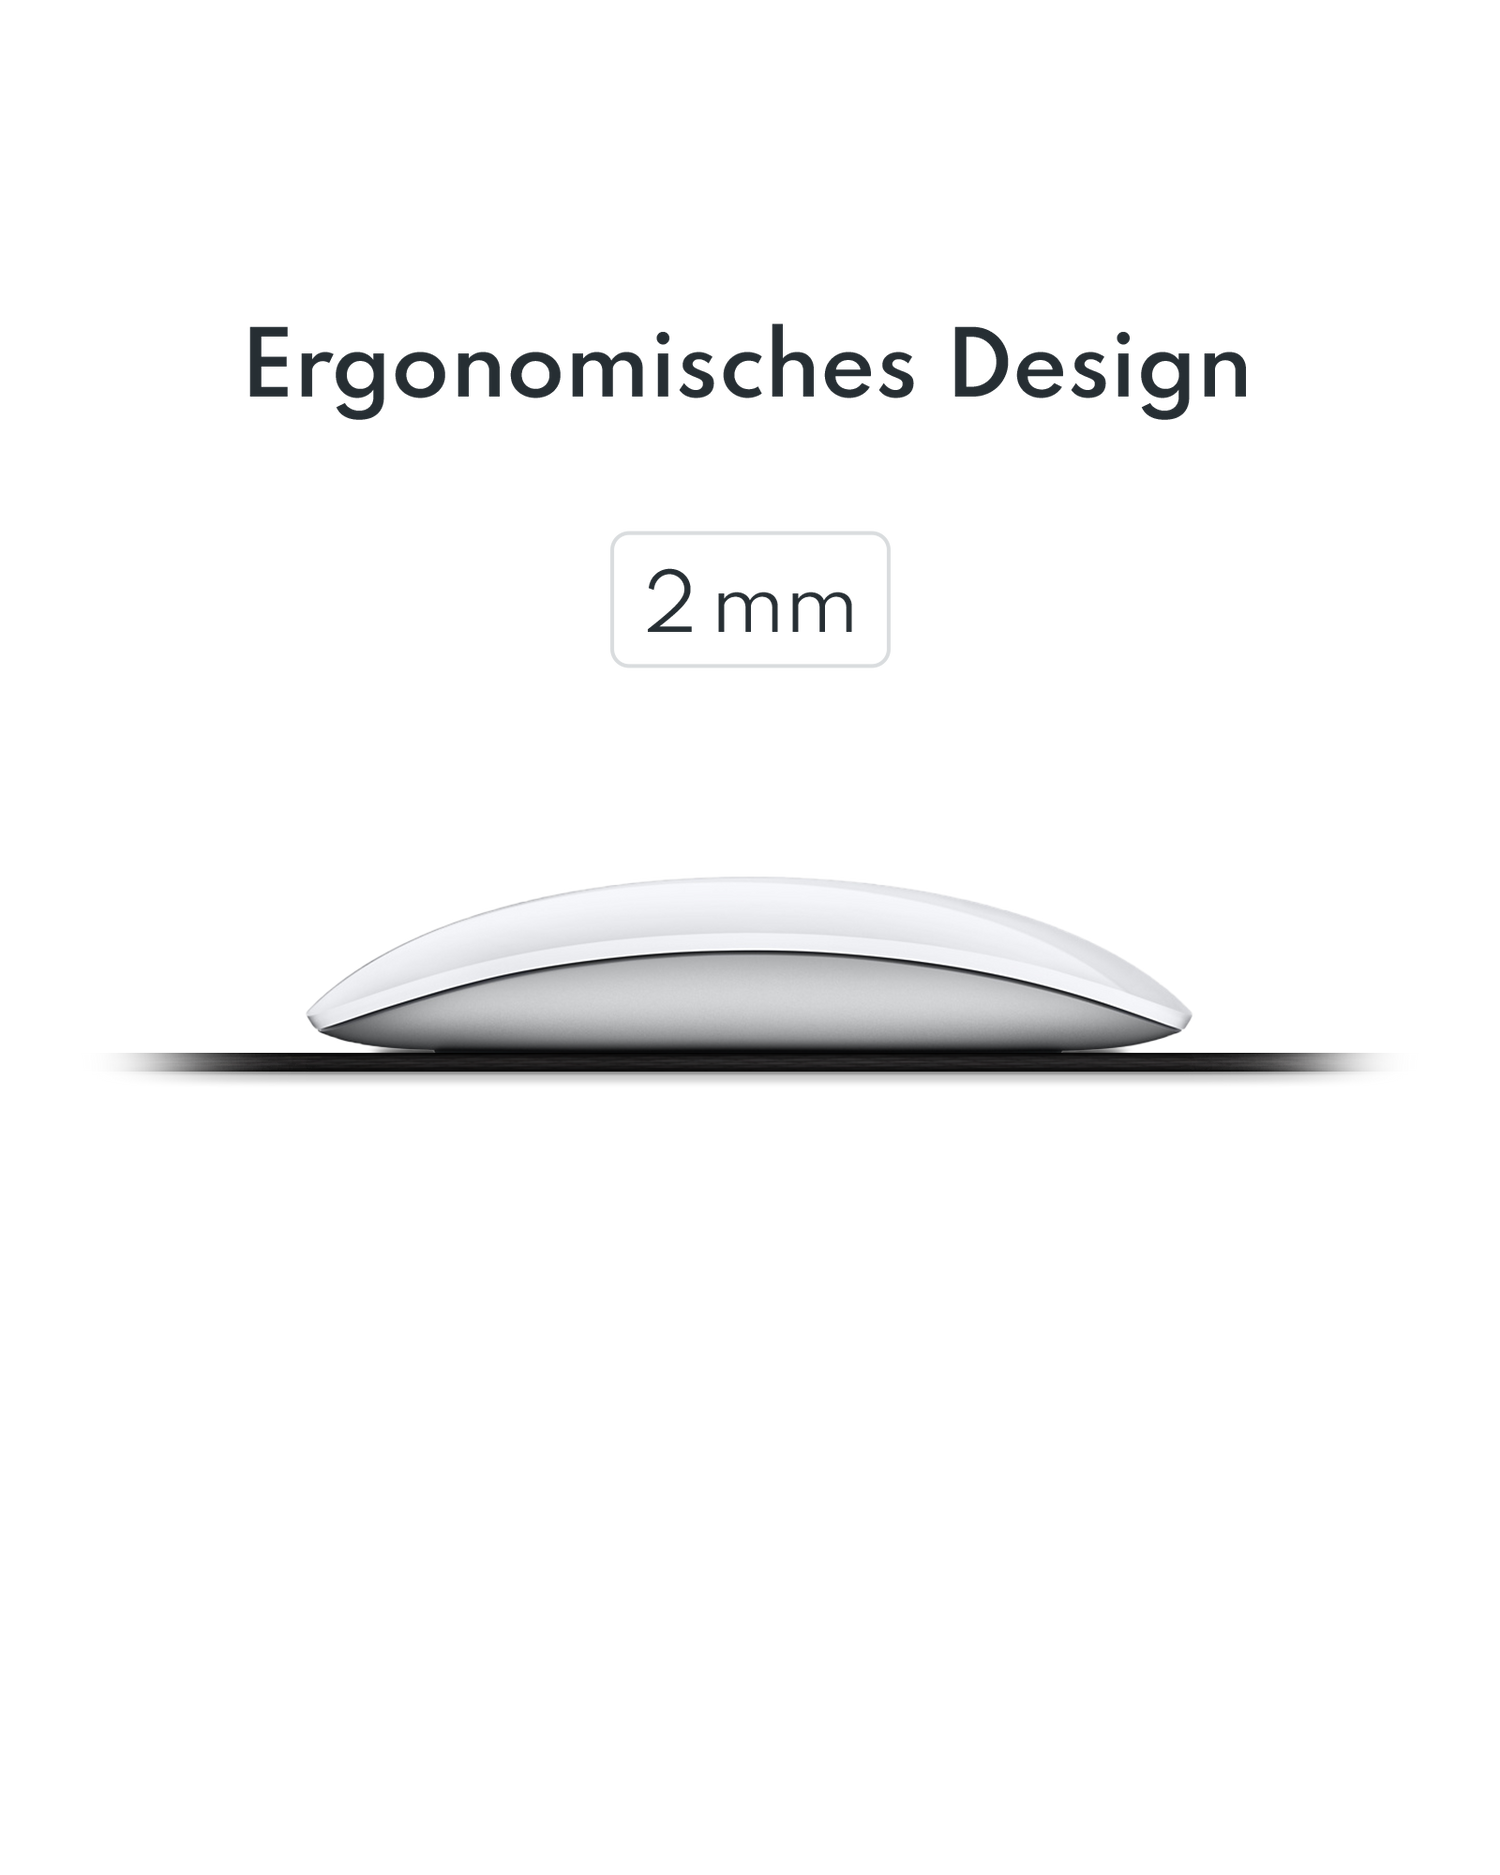 Mauspad mit ergonomischem Design